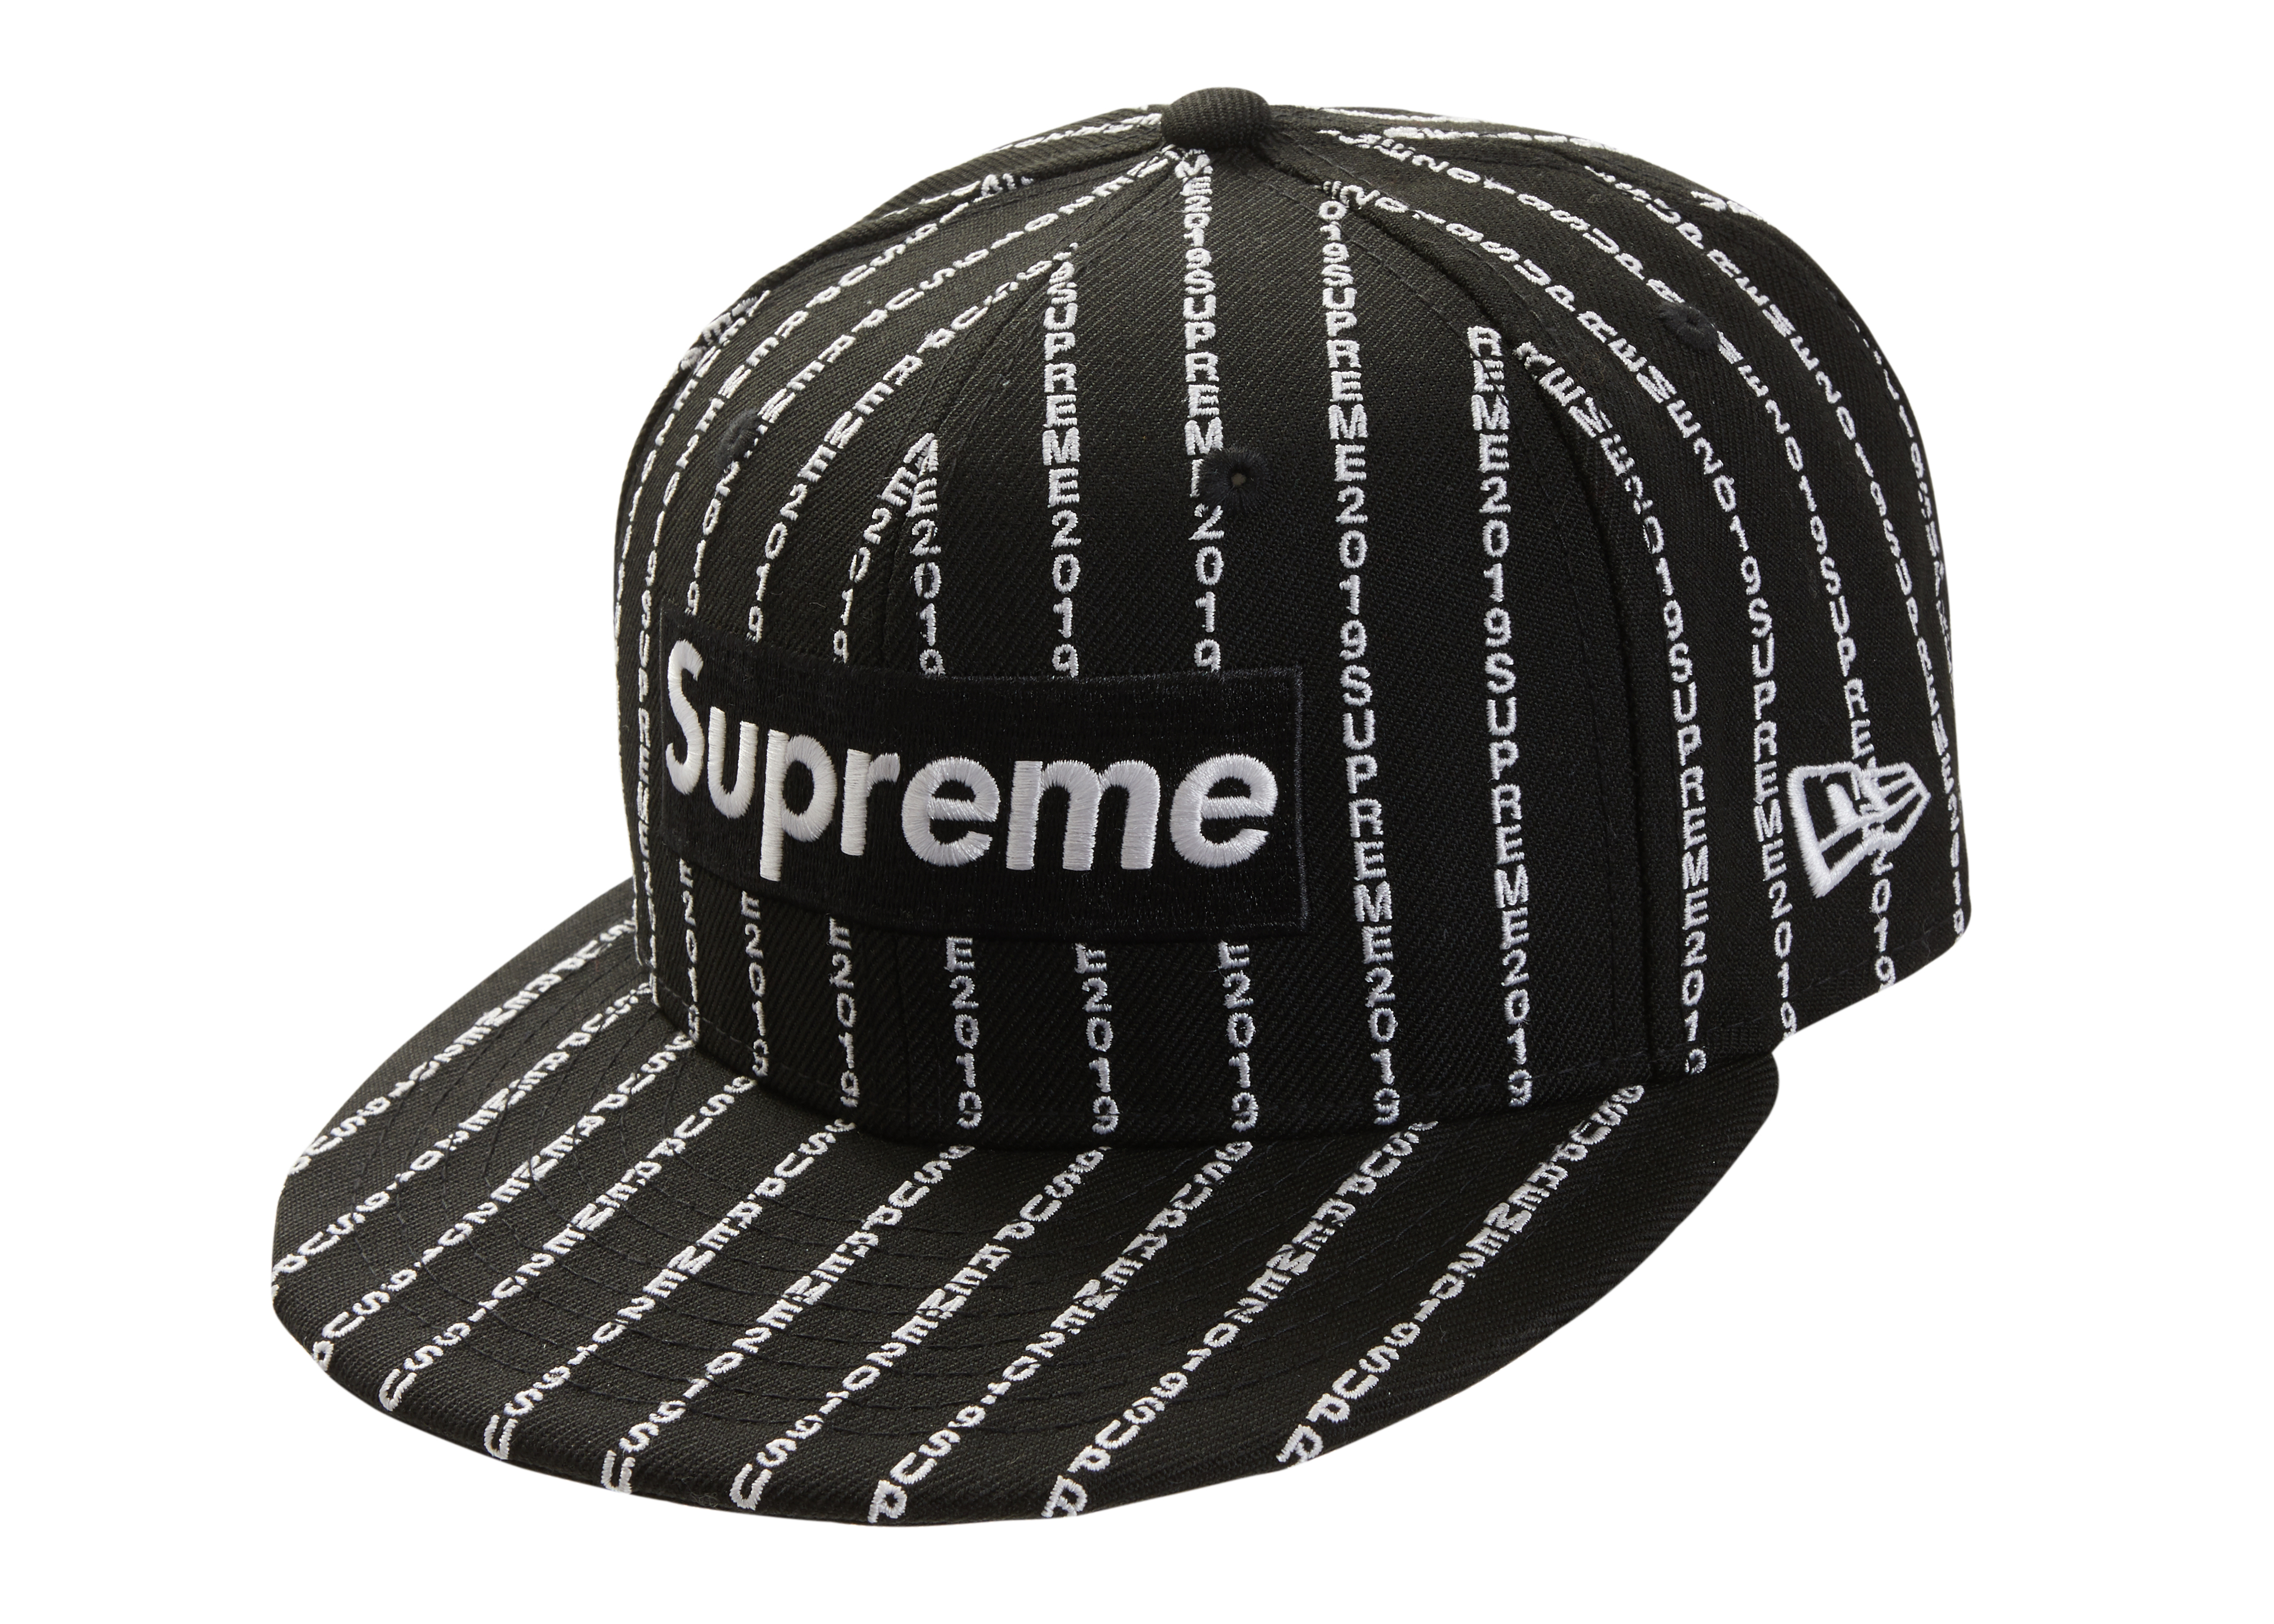 Supreme Hat Stockx Sale, 60% OFF | espirituviajero.com